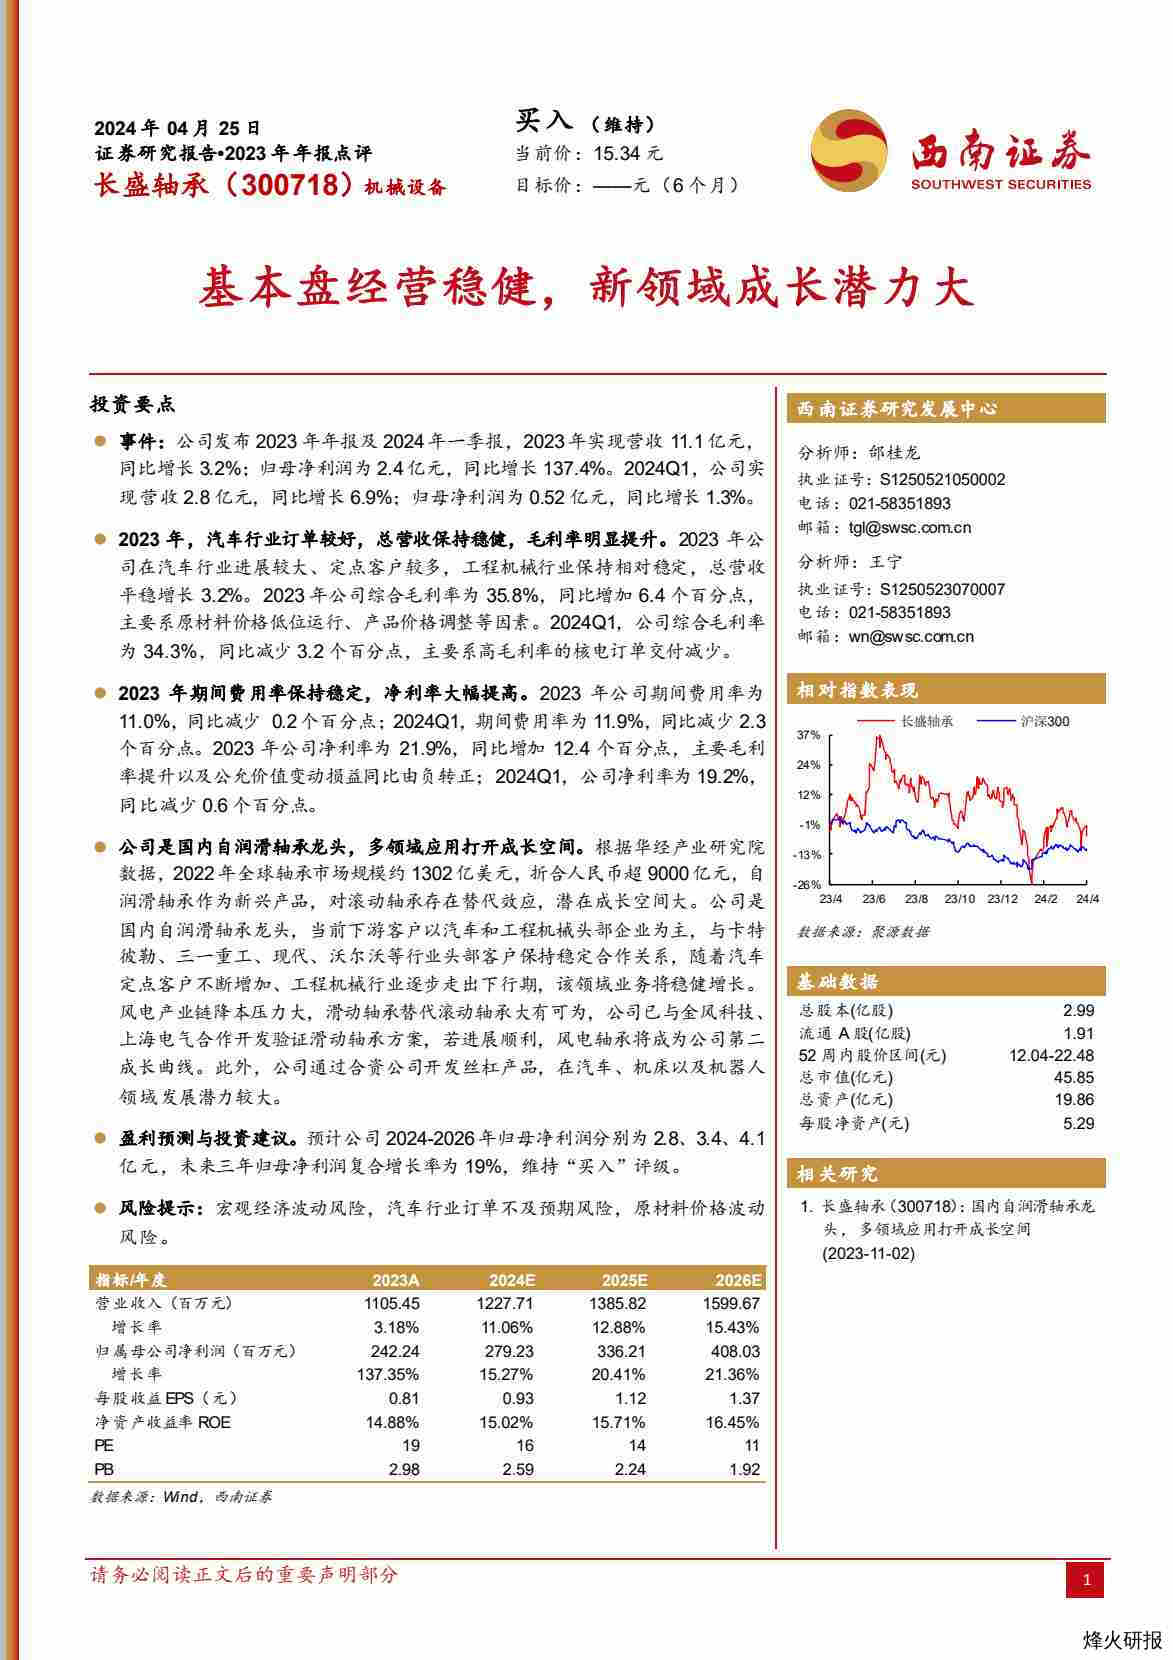 【西南证券】基本盘经营稳健，新领域成长潜力大.pdf-第一页